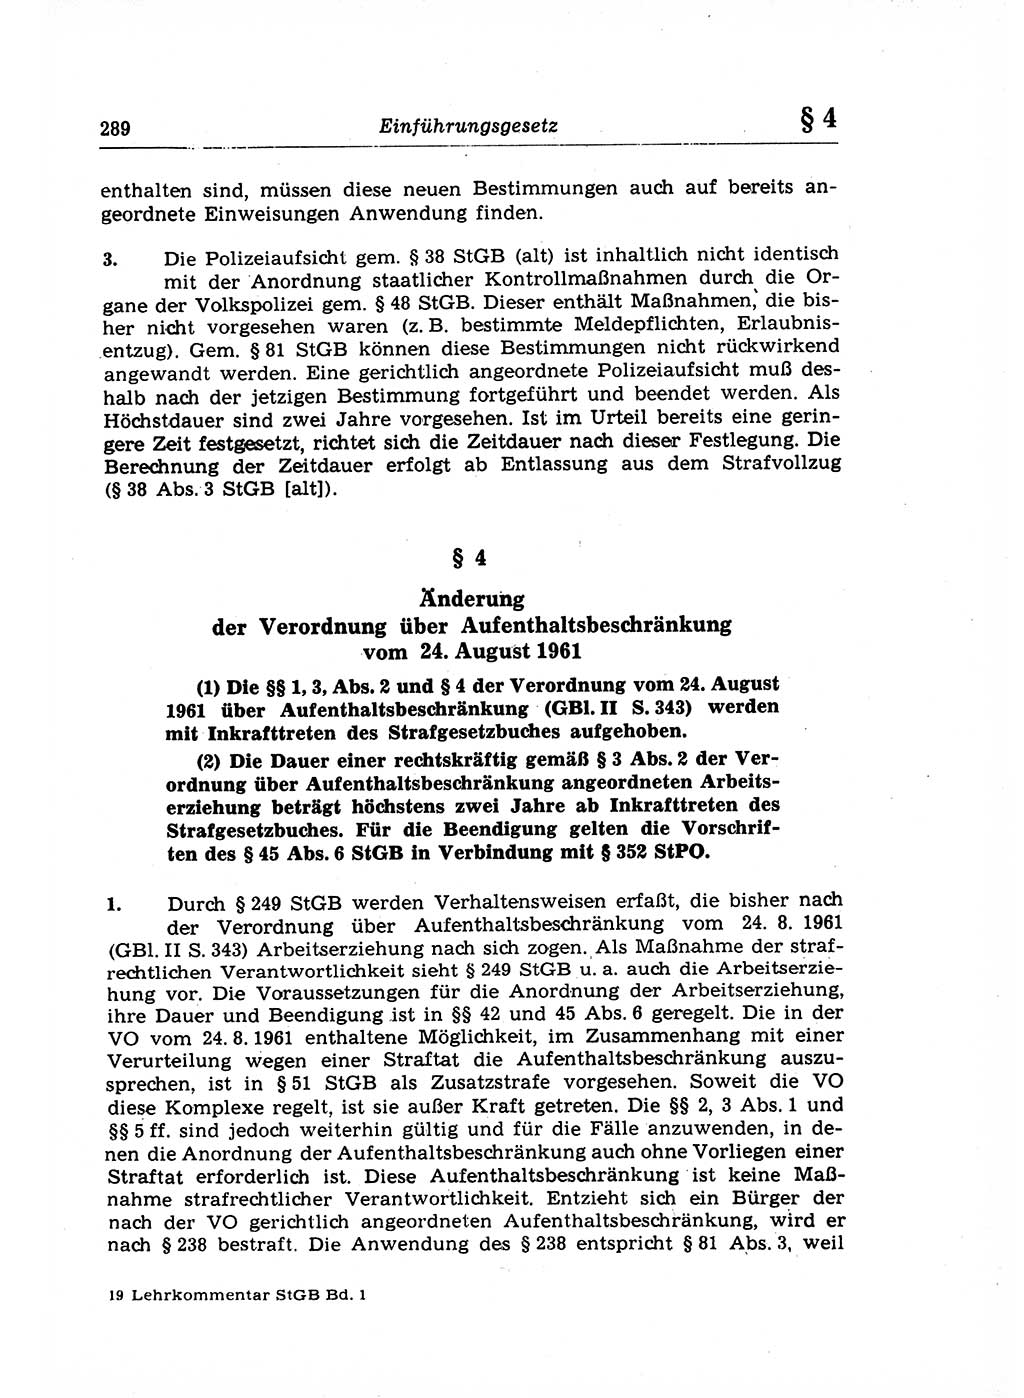 Strafrecht der Deutschen Demokratischen Republik (DDR), Lehrkommentar zum Strafgesetzbuch (StGB), Allgemeiner Teil 1969, Seite 289 (Strafr. DDR Lehrkomm. StGB AT 1969, S. 289)